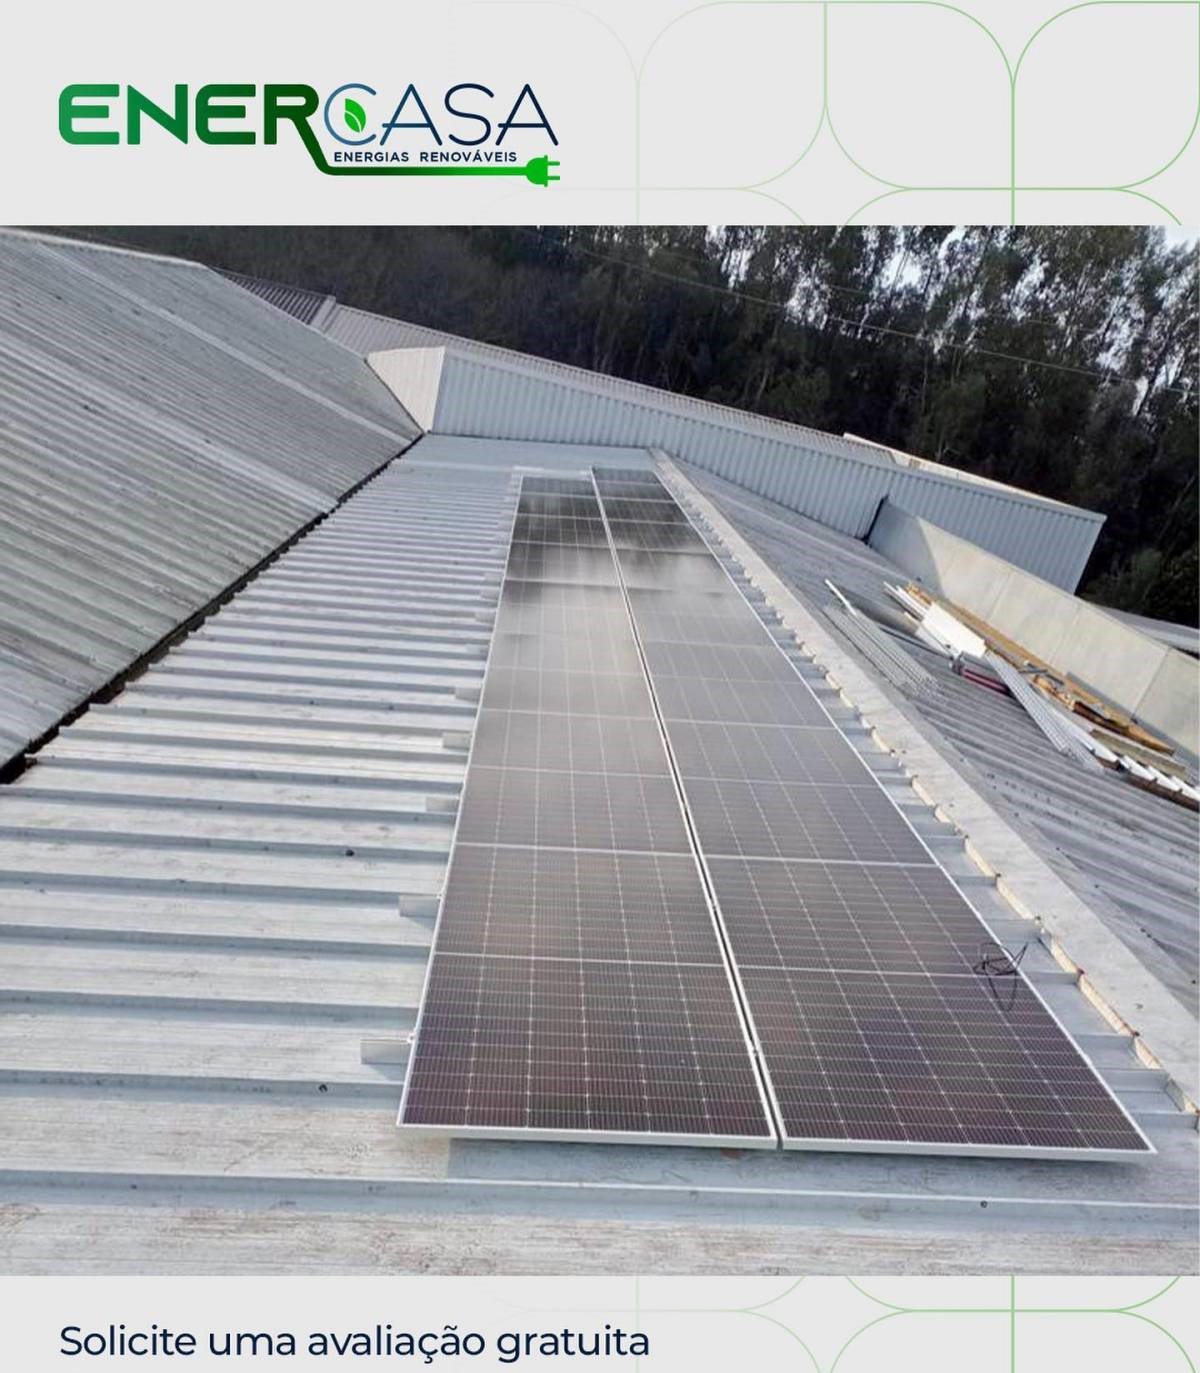 ENERCASA - Energias Renováveis e Climatização, Lda - Braga - Energias Renováveis e Sustentabilidade